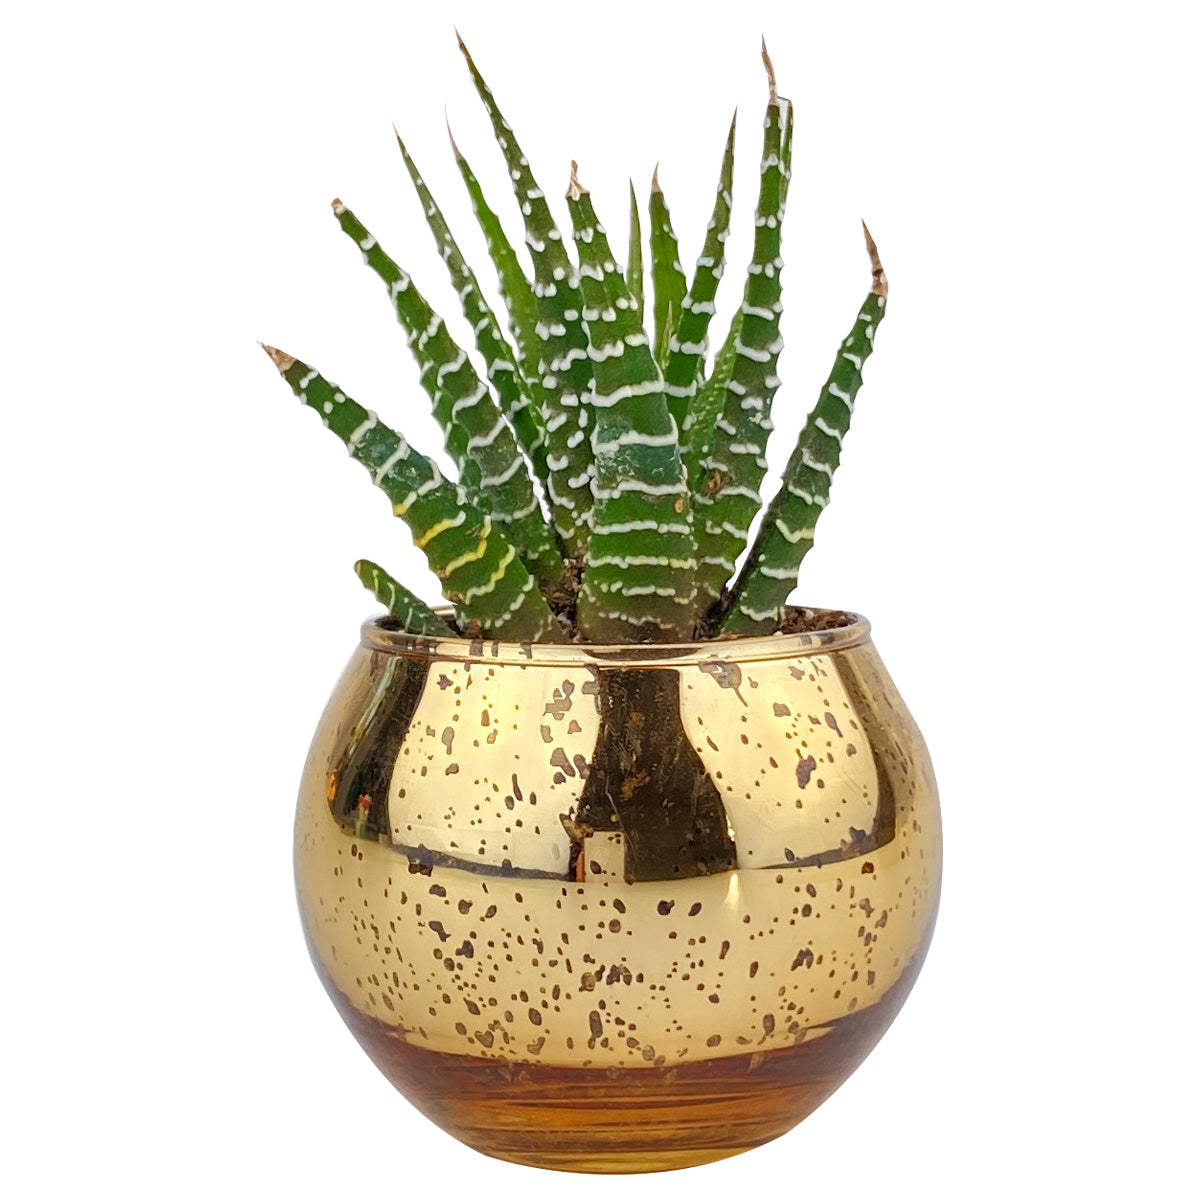 Pot for sale, Mini pot for succulent, Succulent pot decor ideas, Flower pot for sale, glass pots for planting, succulent gift for holiday, Round Gold Glitter Pot